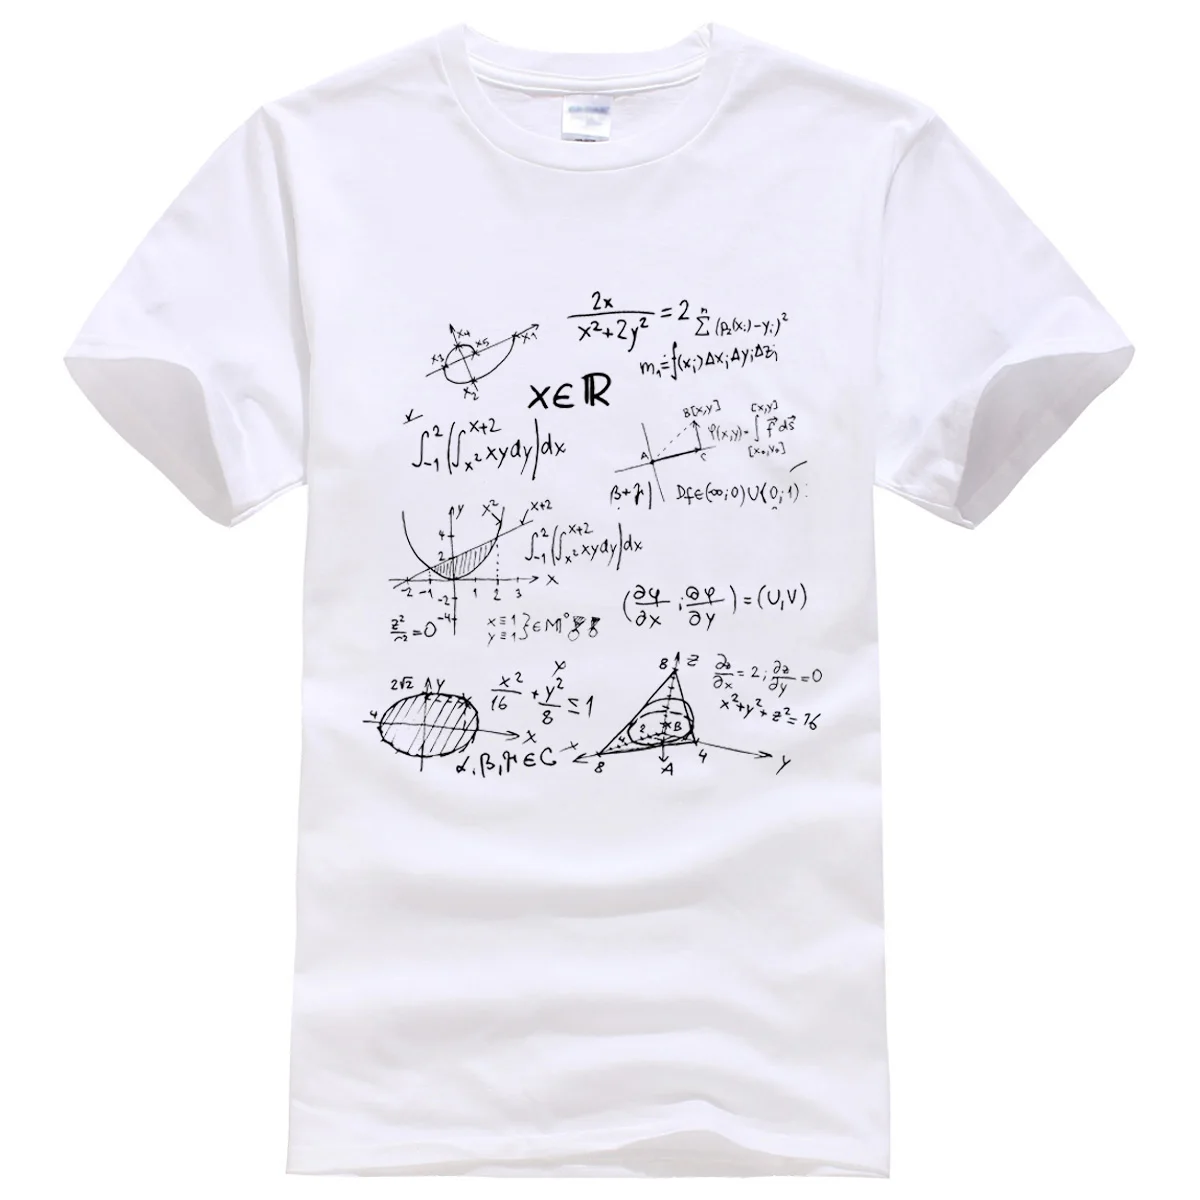 Футболка летняя математическая формула мужские футболки Теория Большого Взрыва футболка мужская спортивная одежда брендовая одежда футболки хлопок